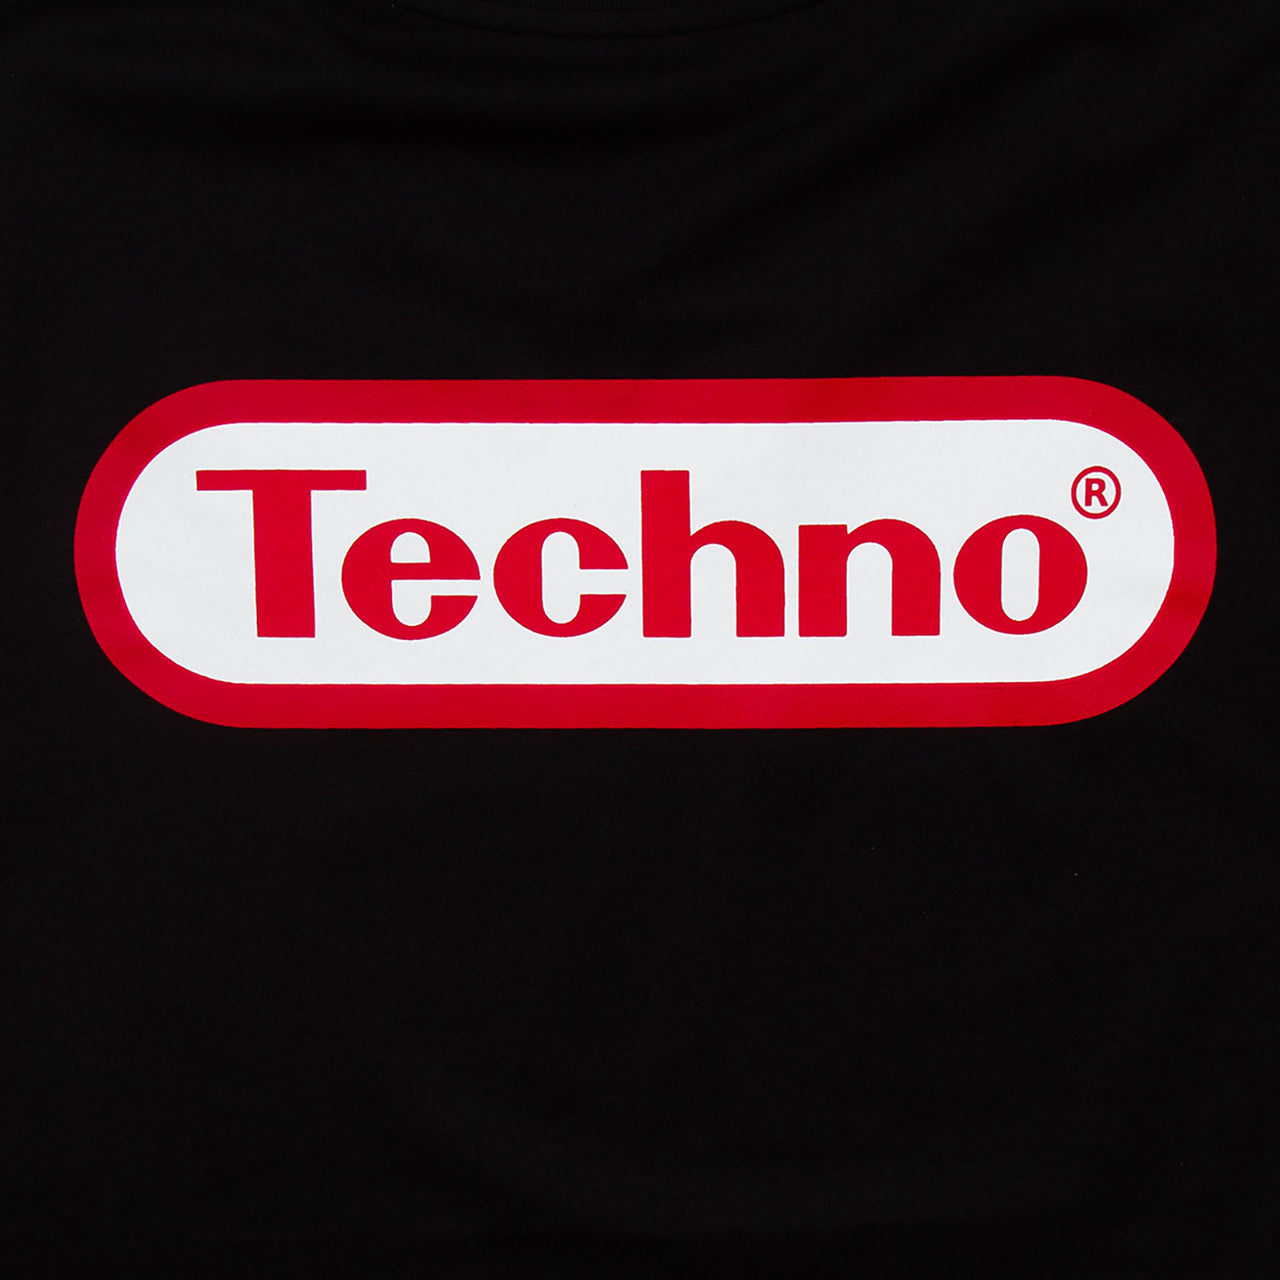 Super Techno Front Print - Tshirt - Black